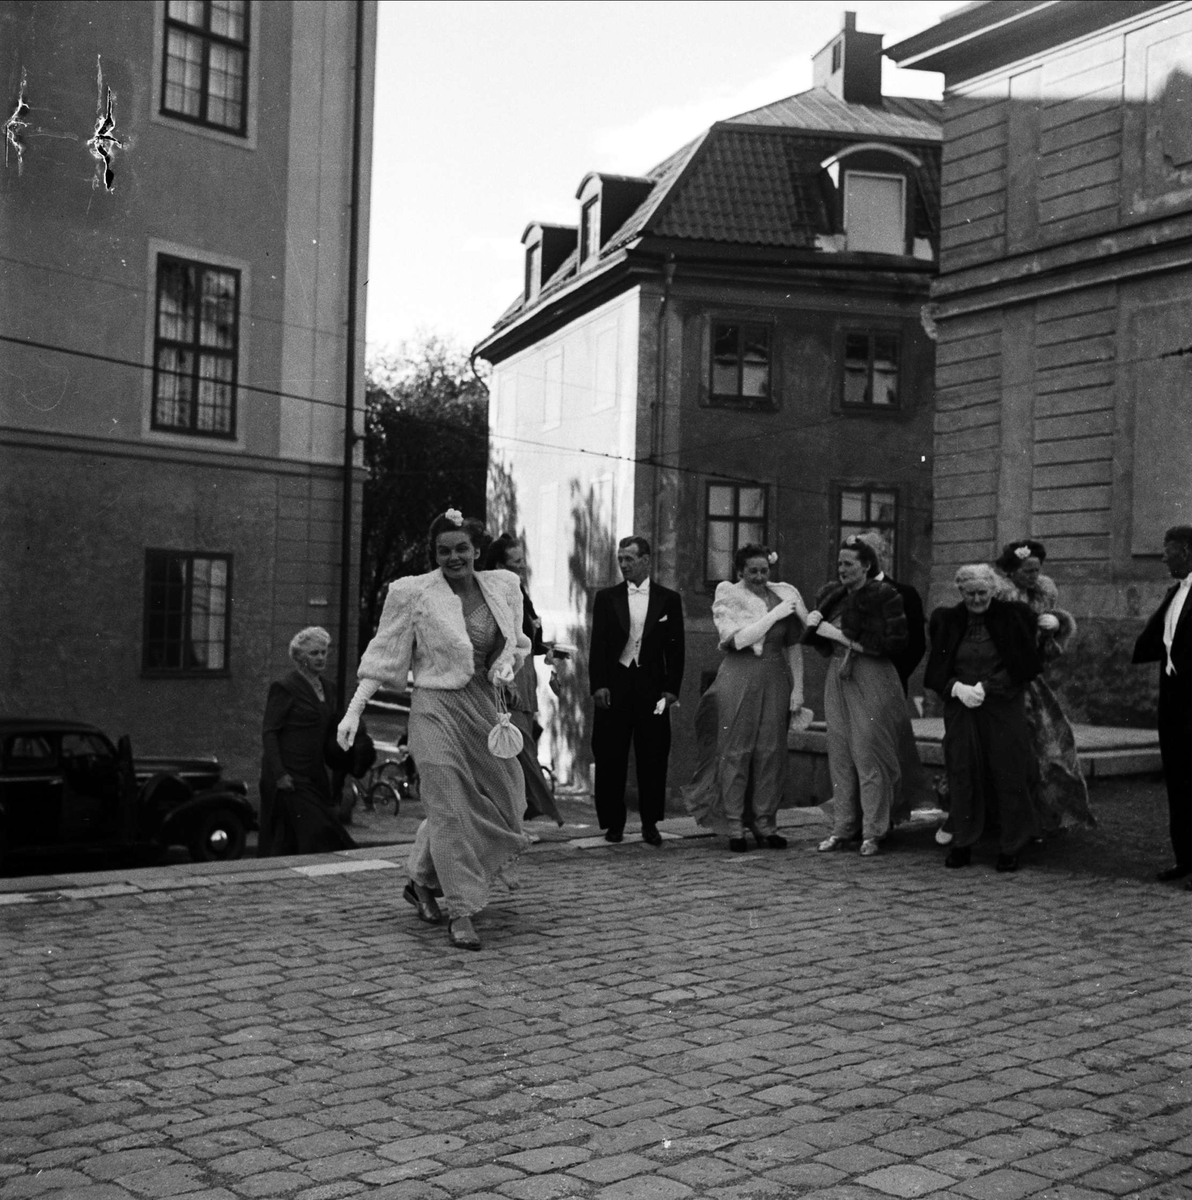 Bröllop - brudparet Nordin, bröllopsgäster på Domkyrkoplan, Uppsala